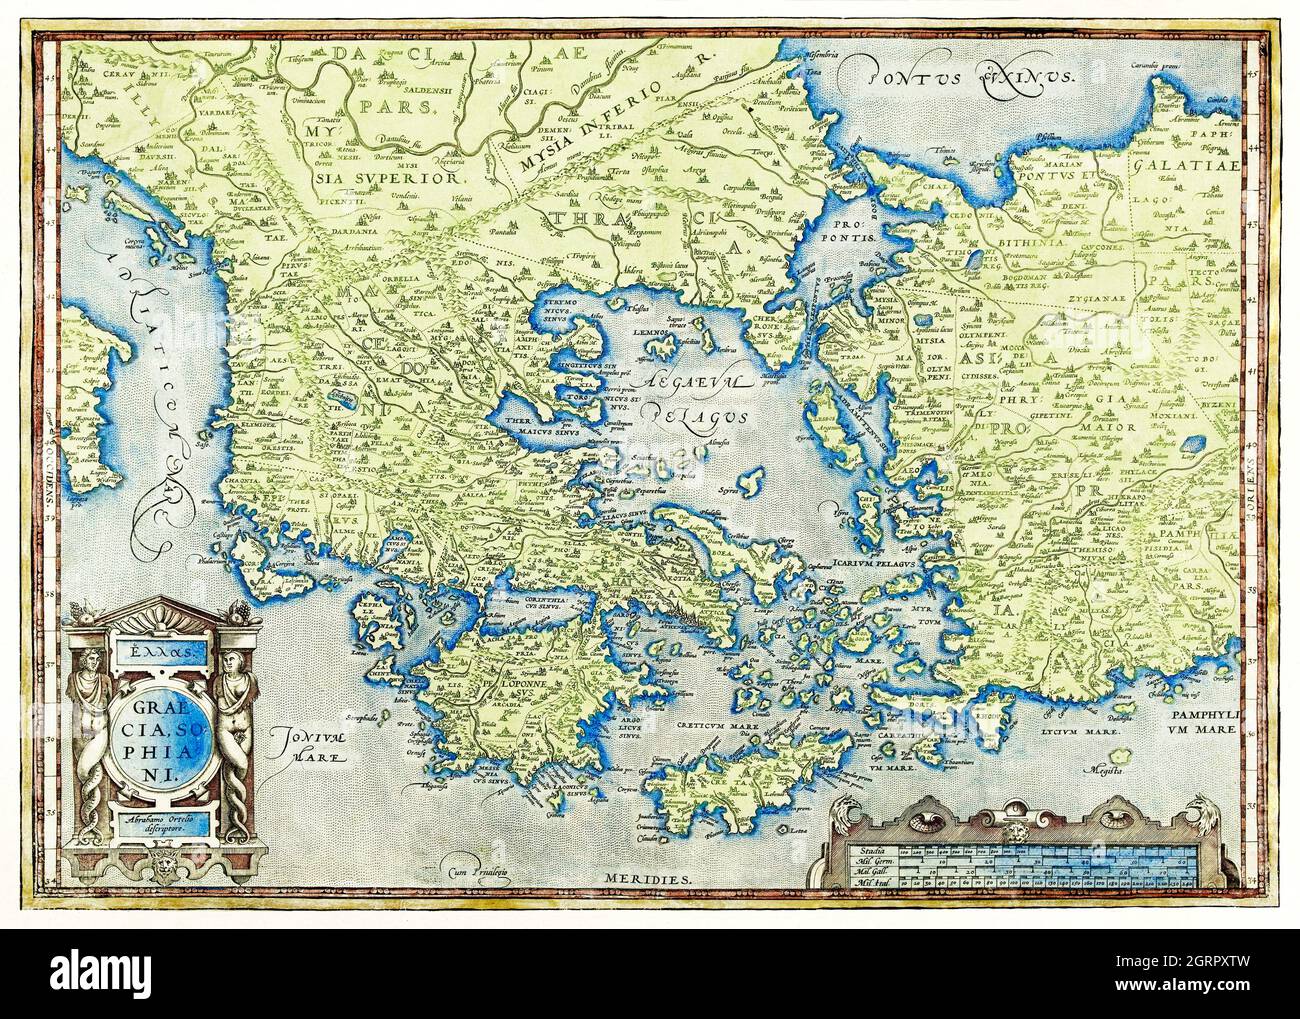 Dutch kaart van Griekenland by Abraham Ortelius (1527-1598). Map of Greece. Stock Photo